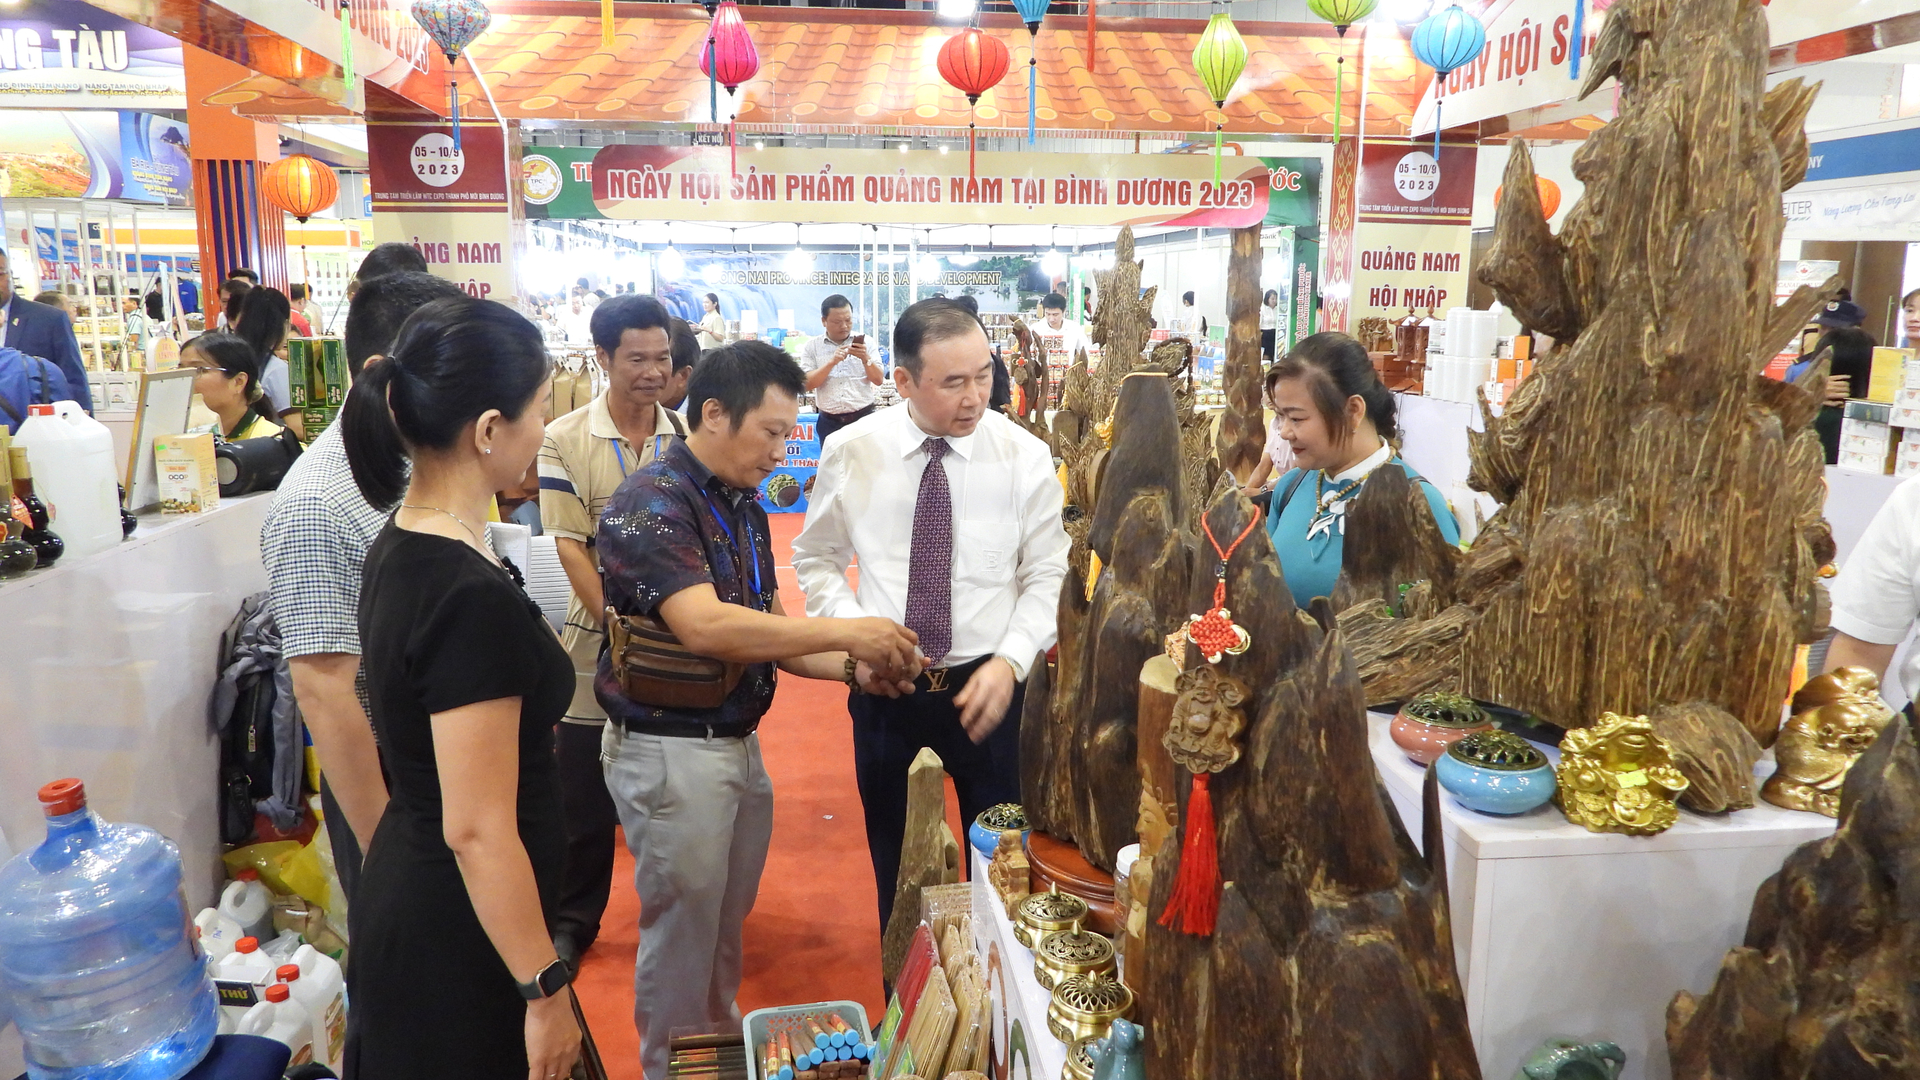 Hội chợ thu hút rất nhiều mặt hàng đặc trưng, sản phẩm công nghiệp nông thôn tiêu biểu các tỉnh, thành. Ảnh: Trần Trung.